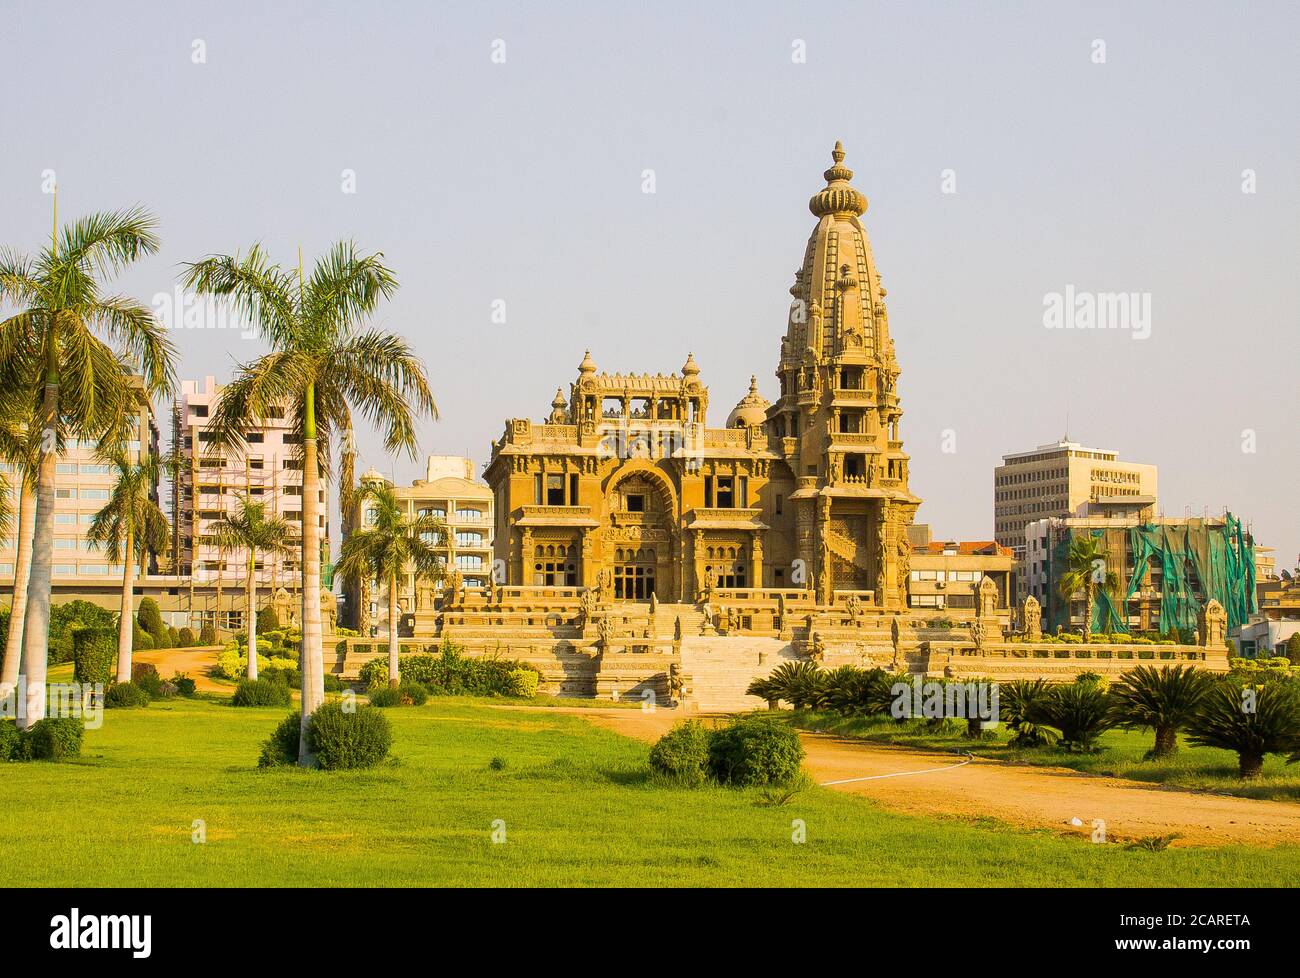 Kairo, die moderne Heliopolis Stadt wurde von dem Baron Empain zu Beginn des 20. Jahrhunderts gebaut. Der Palast des Barons Empain, Khmer-Stil. Stockfoto